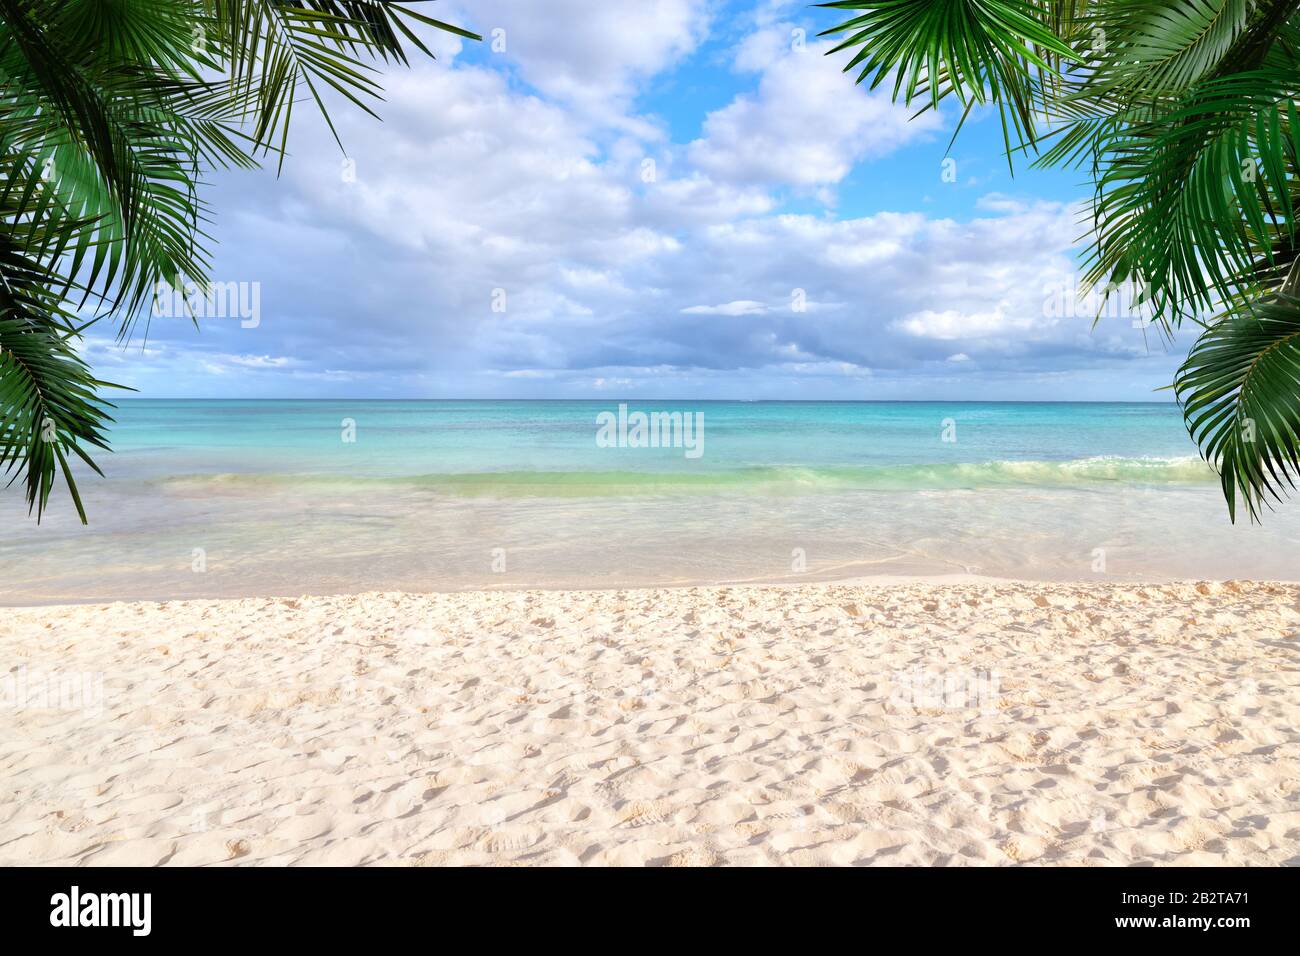 Plage tropicale ensoleillée avec plage de sable, eaux de mer claires et palmiers avec espace de copie. Banque D'Images